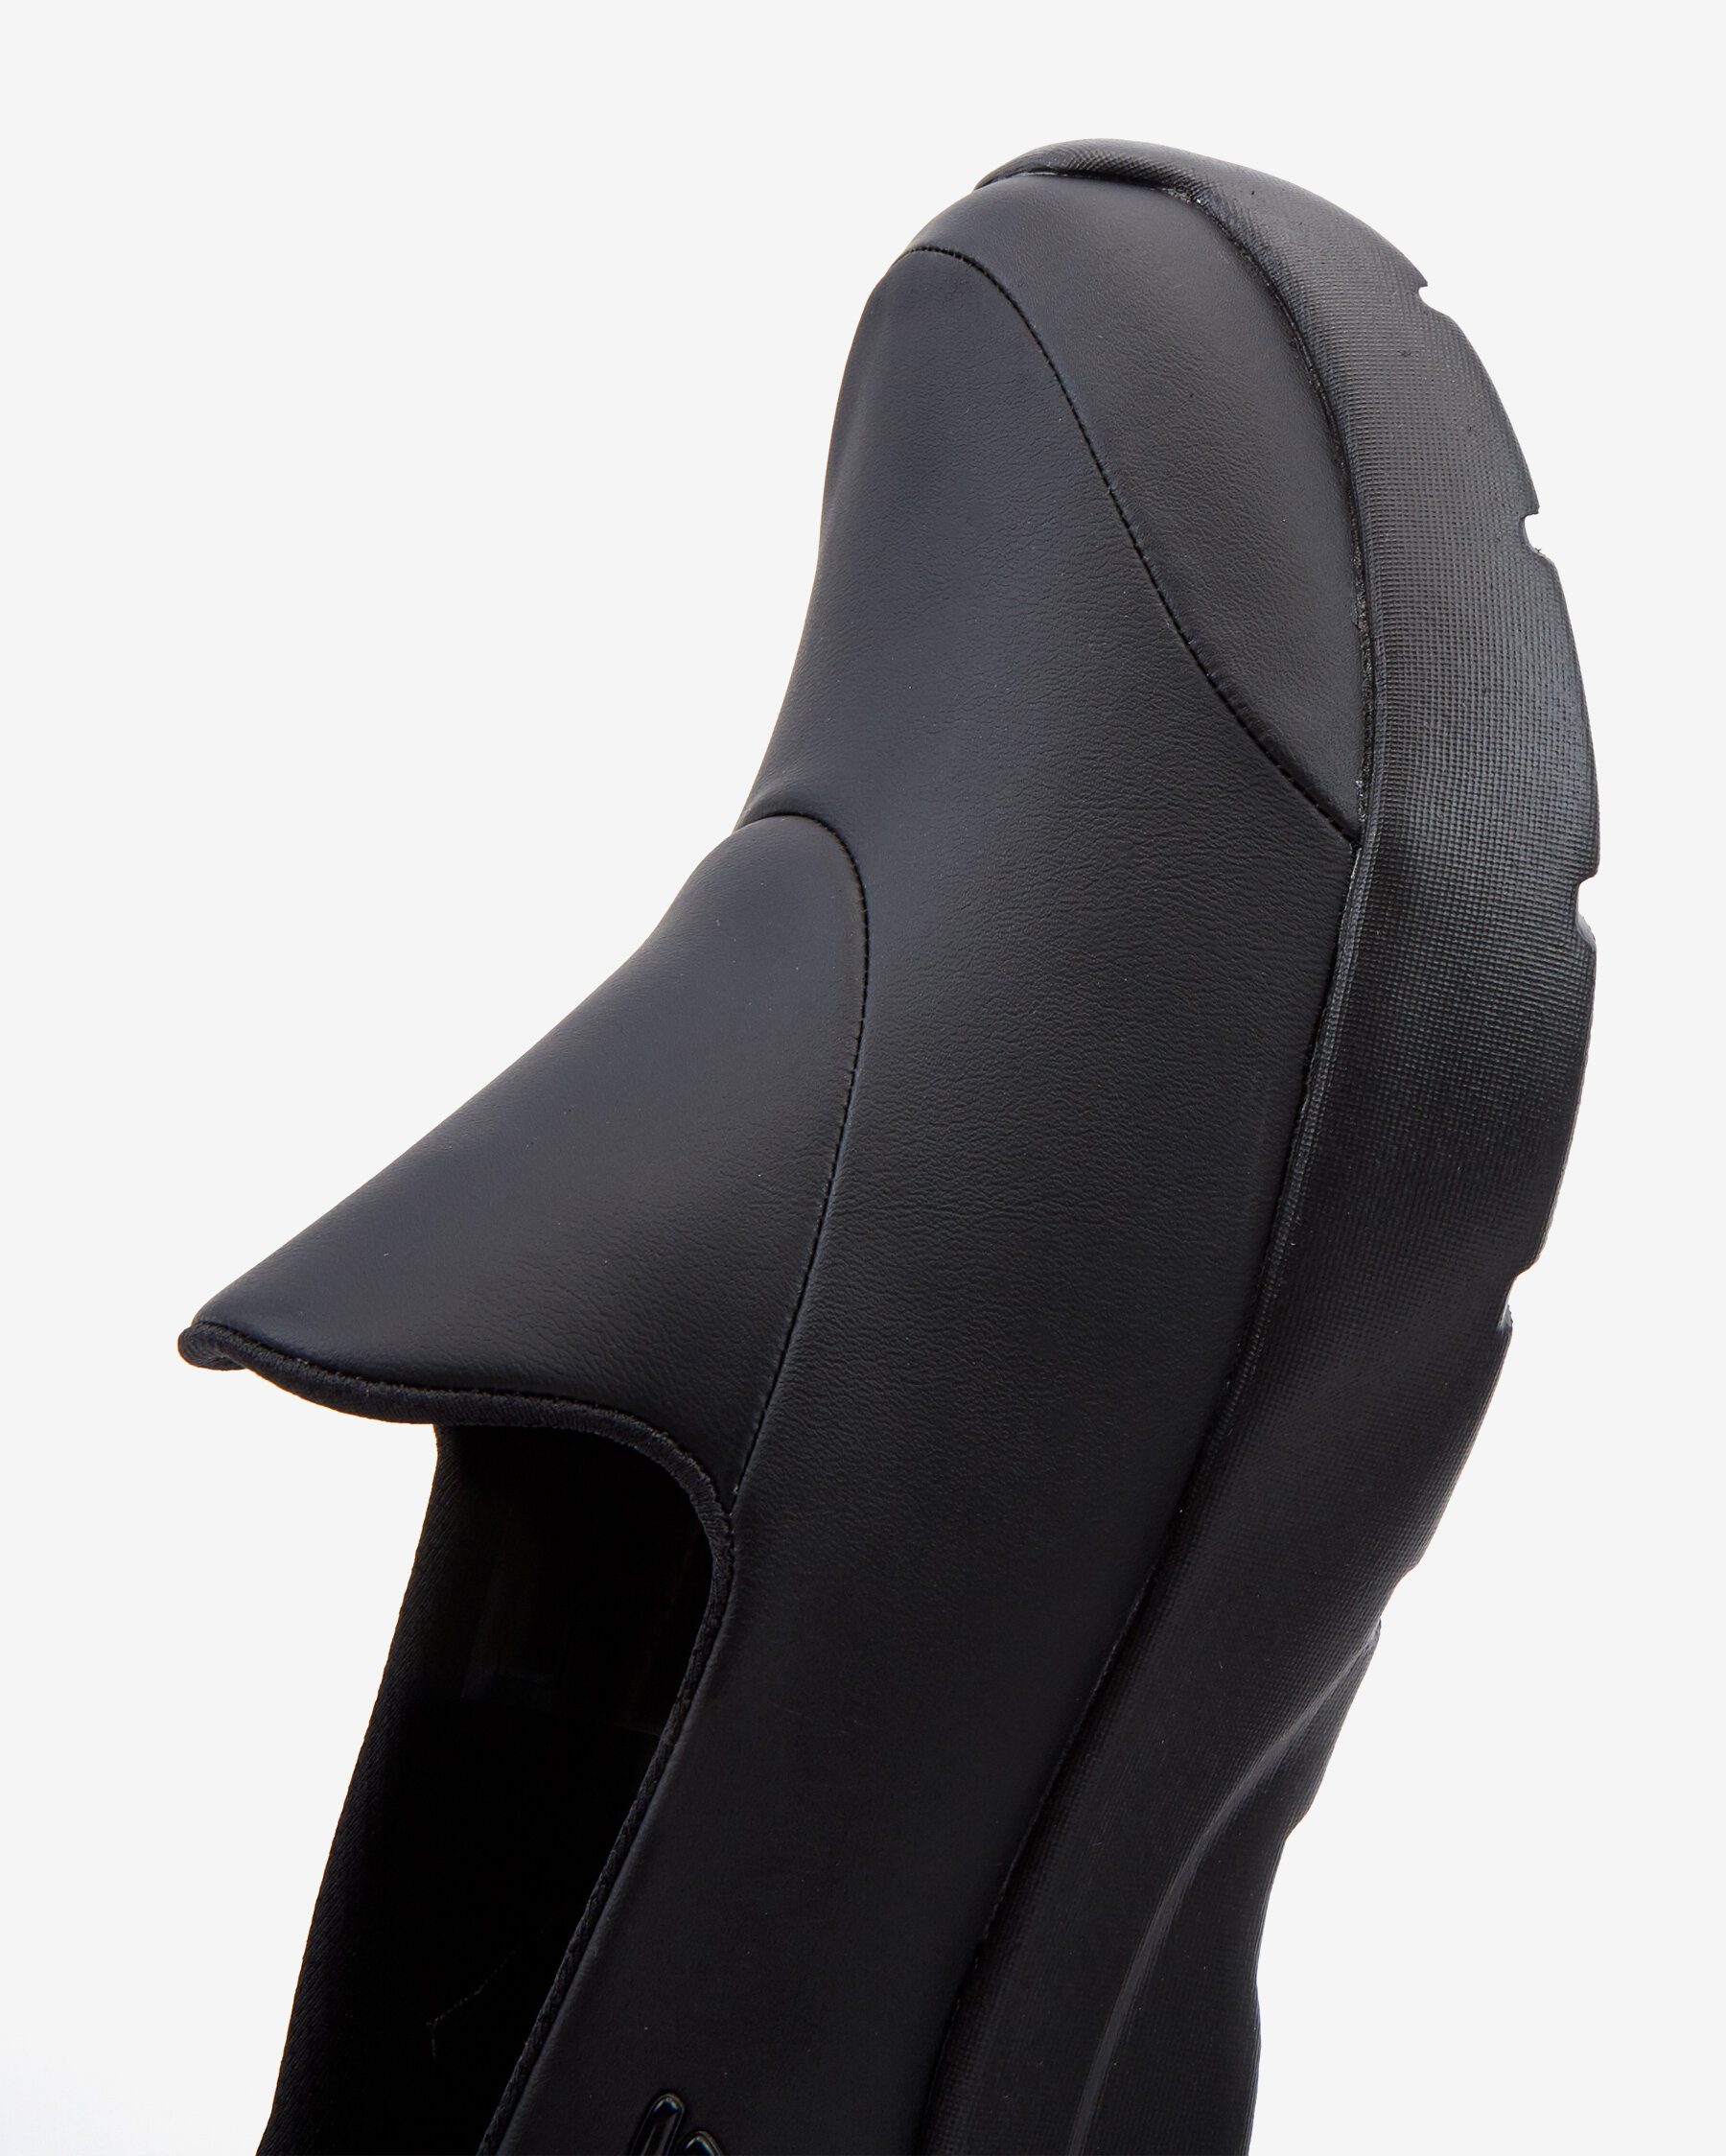 Skechers Dynami̇ght 2.0 Kadın Siyah Spor Ayakkabı (896120TK BBK)